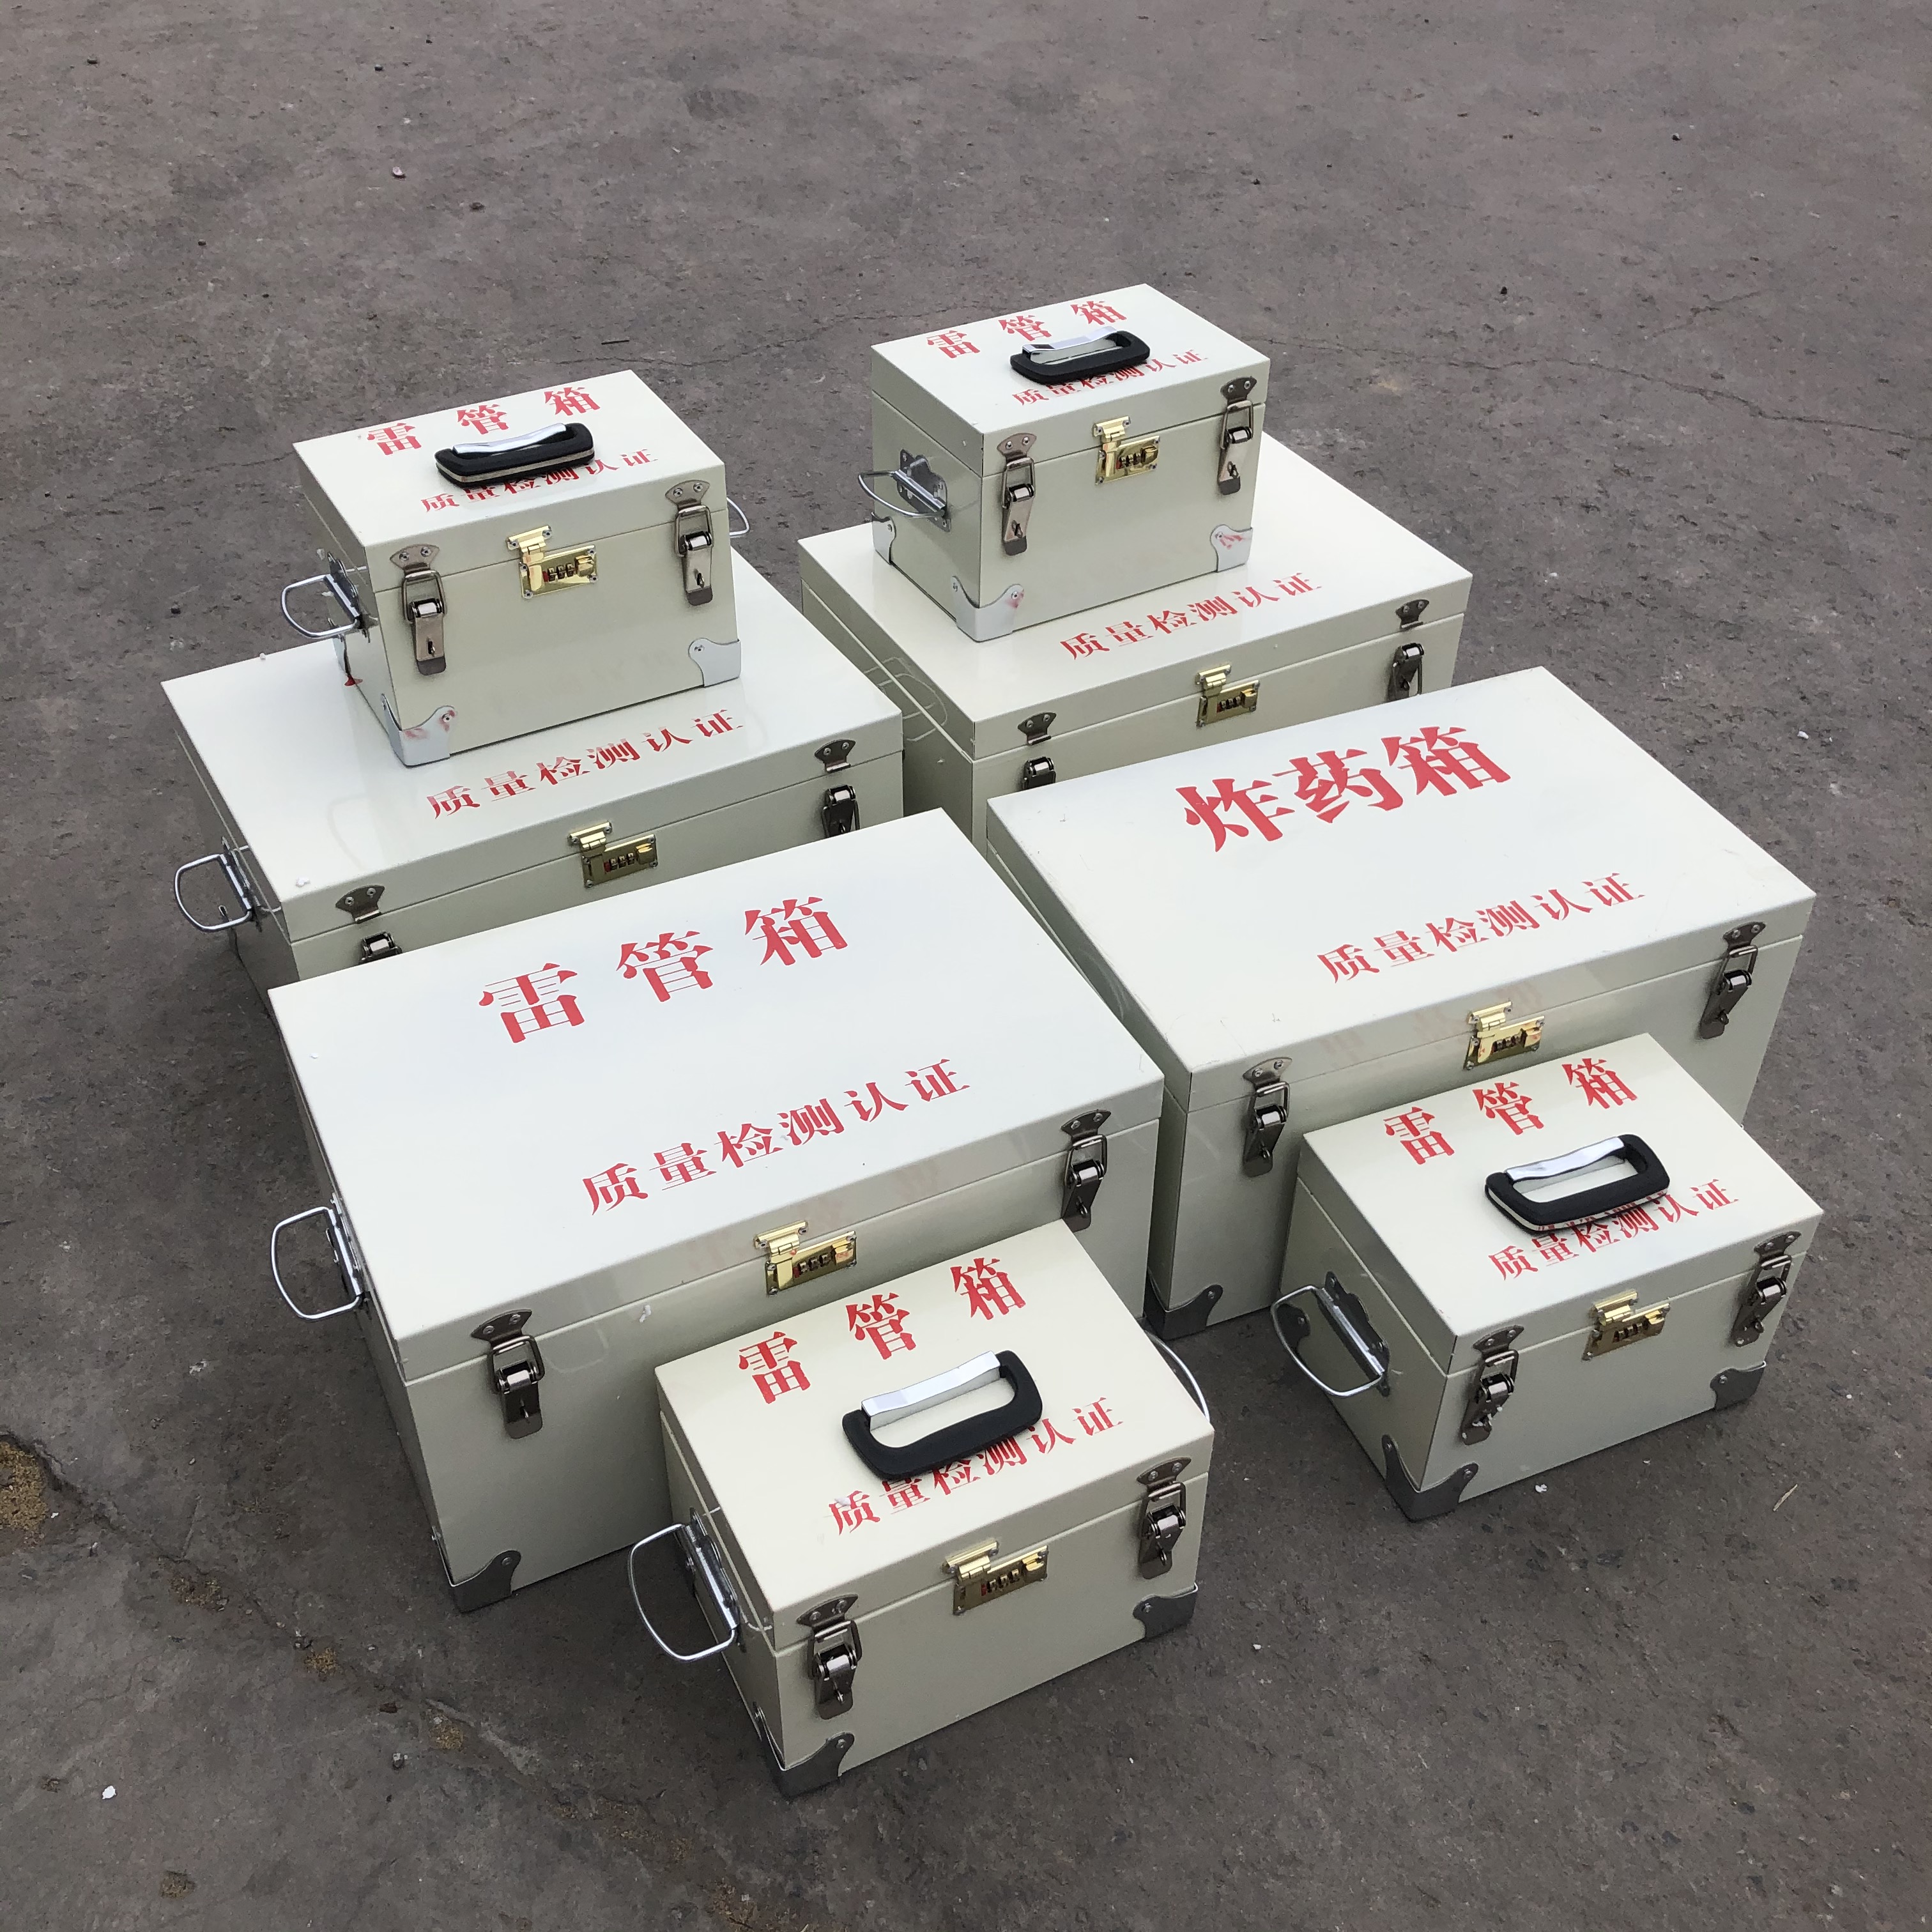 矿山24公斤防爆钢板炸药箱生产厂家 数码雷管收纳箱